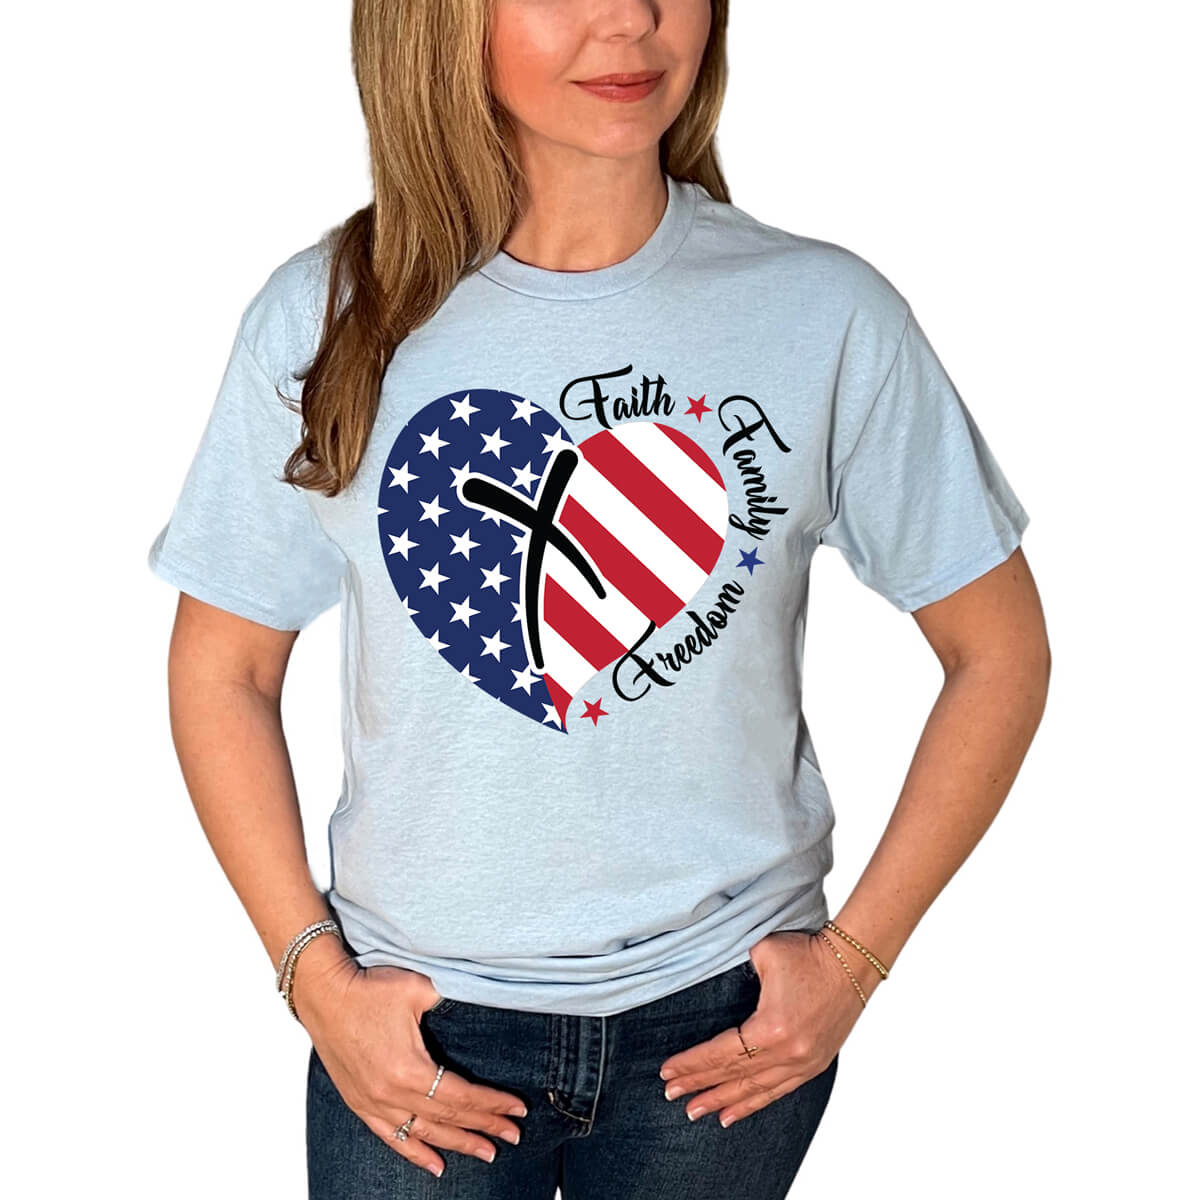 Faith Family Freedom American Flag Heart T-Shirt